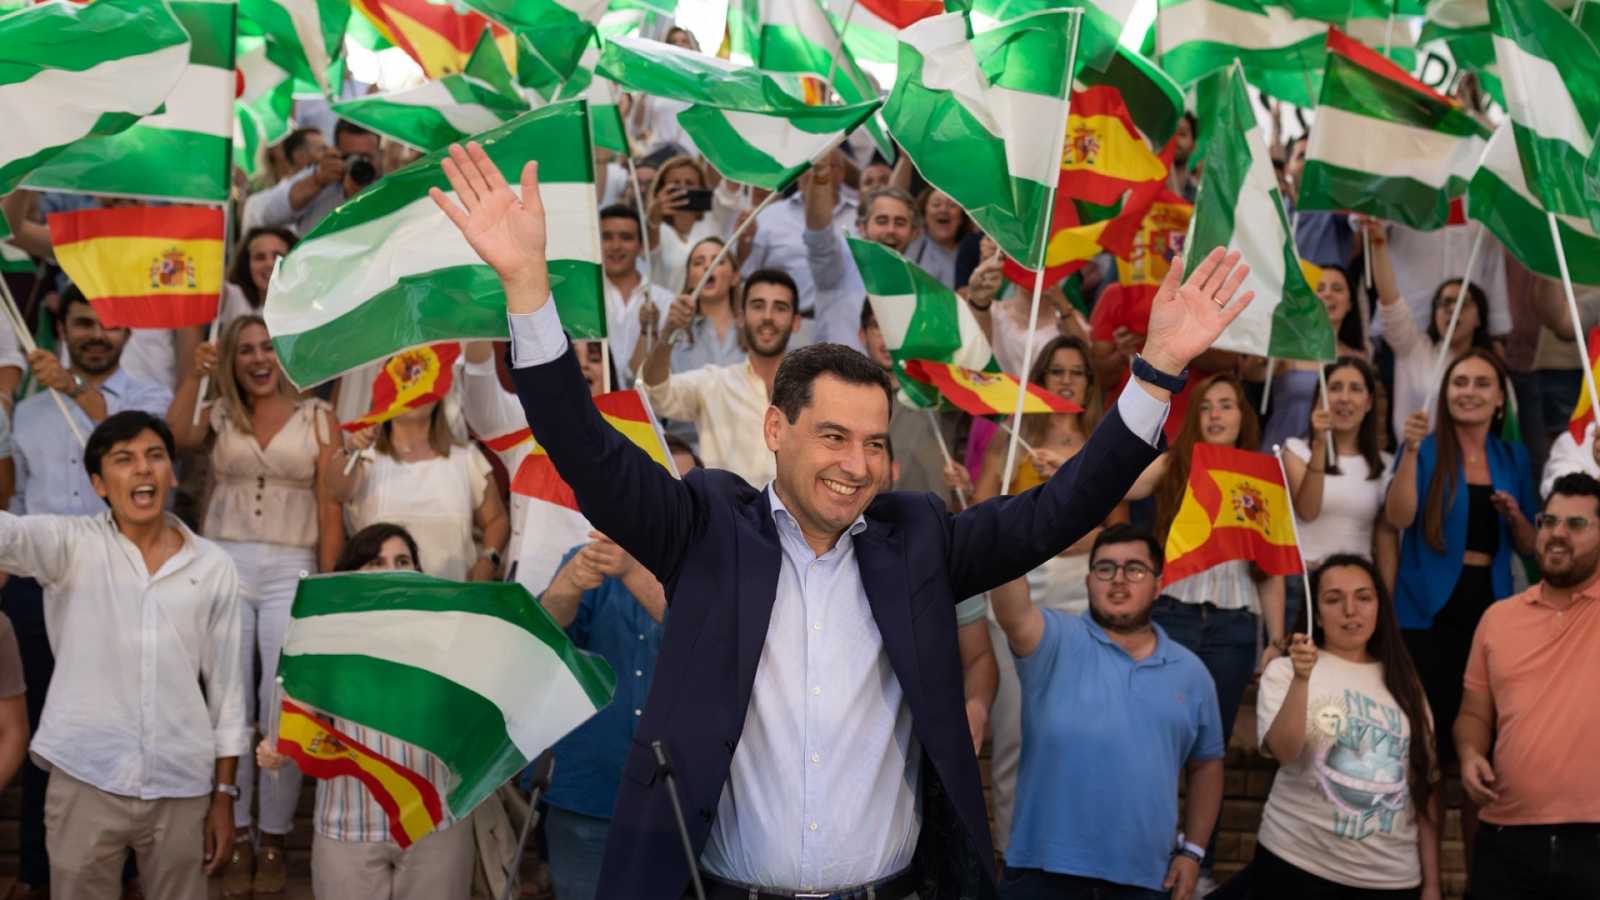 El PP consigue en Andalucía una victoria histórica. Vox con 14 diputados queda como tercera fuerza y el PSOE de Pedro Sánchez se hunde junto con la izquierda andaluza.